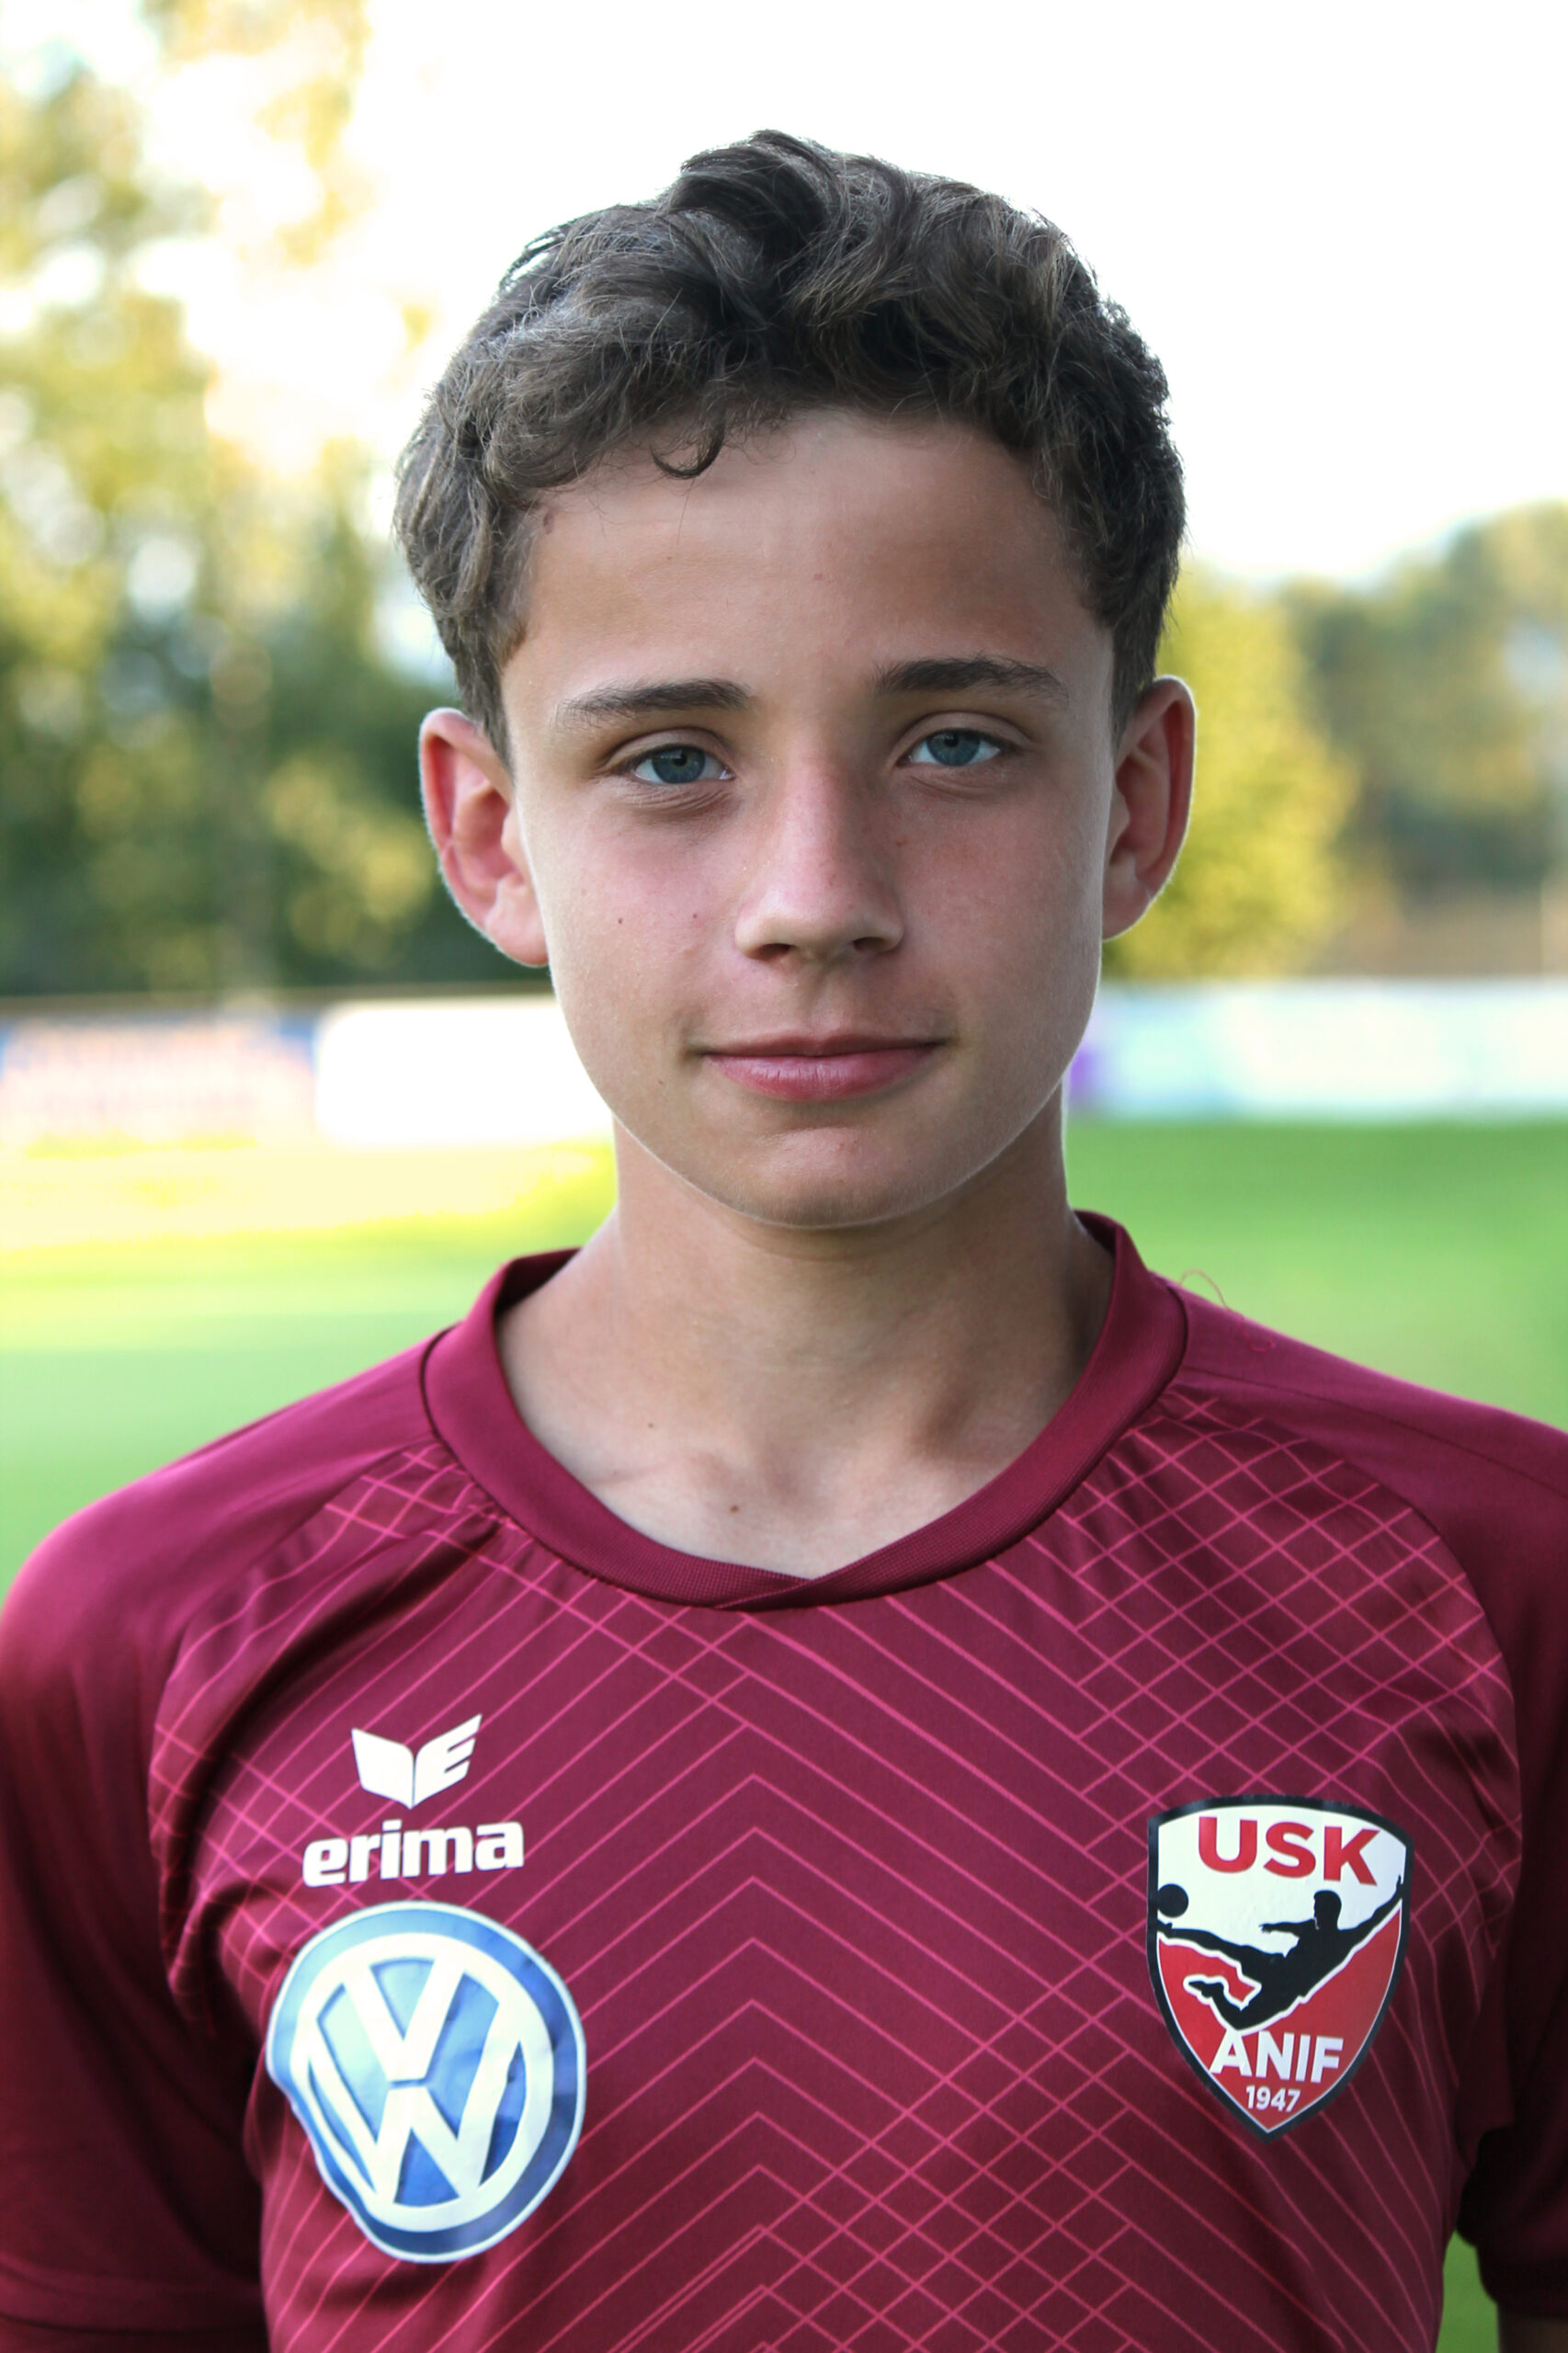 Luca Ellensohn, USK-Anif